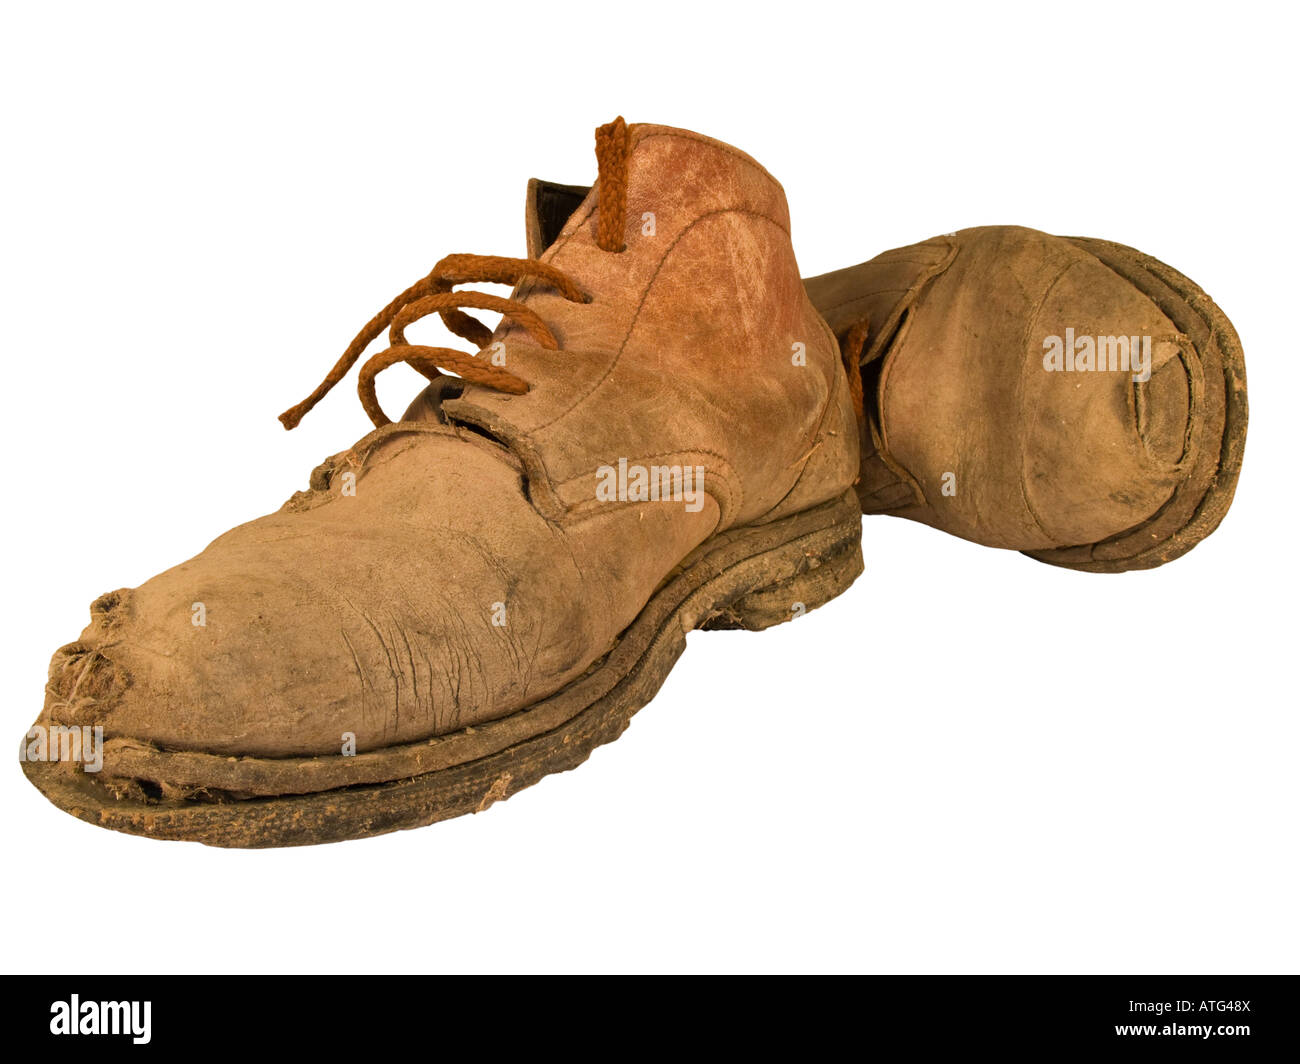 Alte, verschlissene arbeiten Stiefel mit Löchern Stockfotografie - Alamy